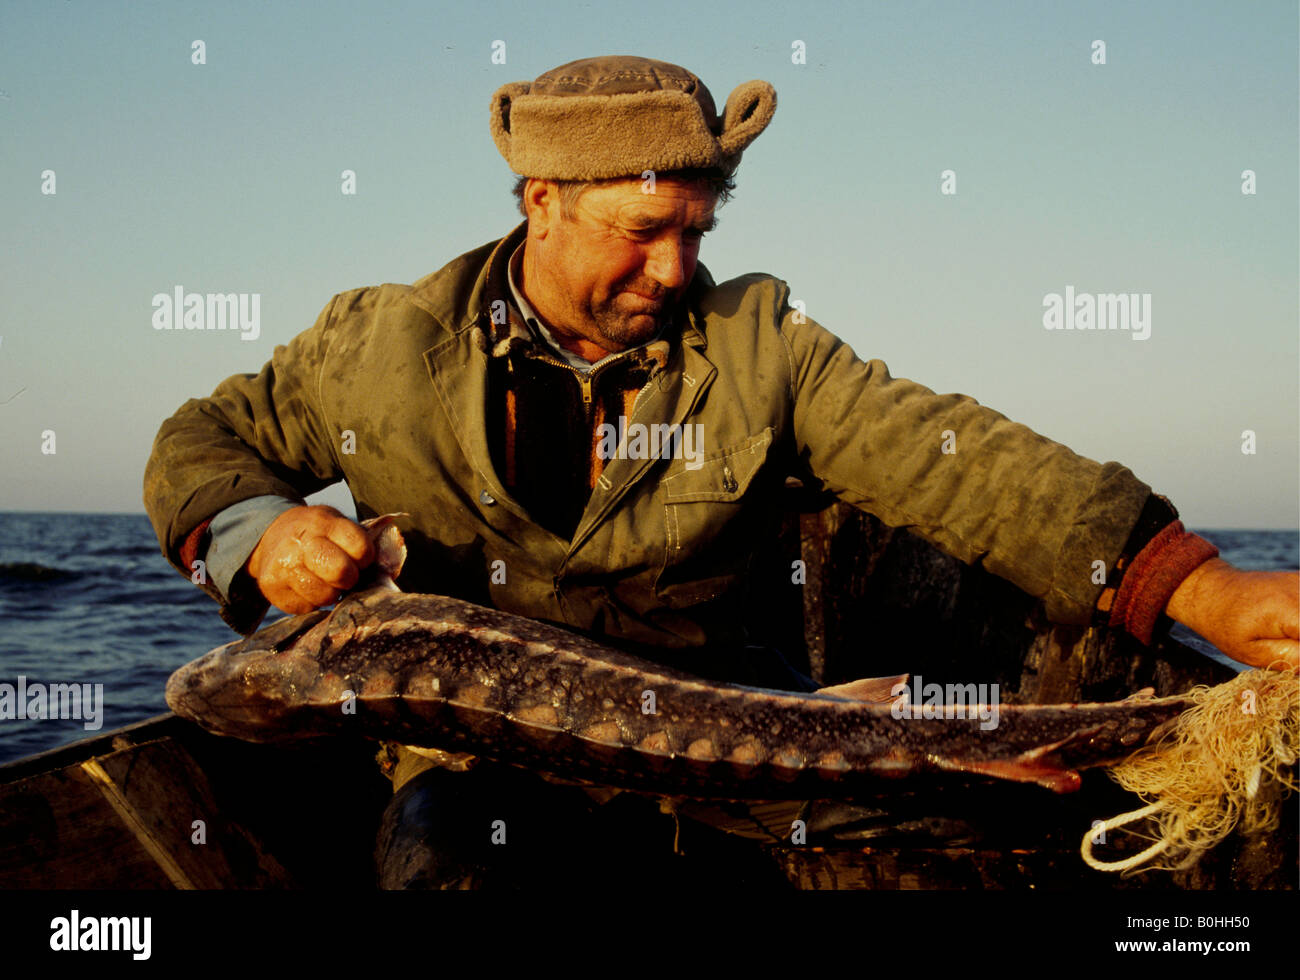 Un pêcheur de l'esturgeon en tirant un poisson de son filet, St Gheorghe, Roumanie. Banque D'Images